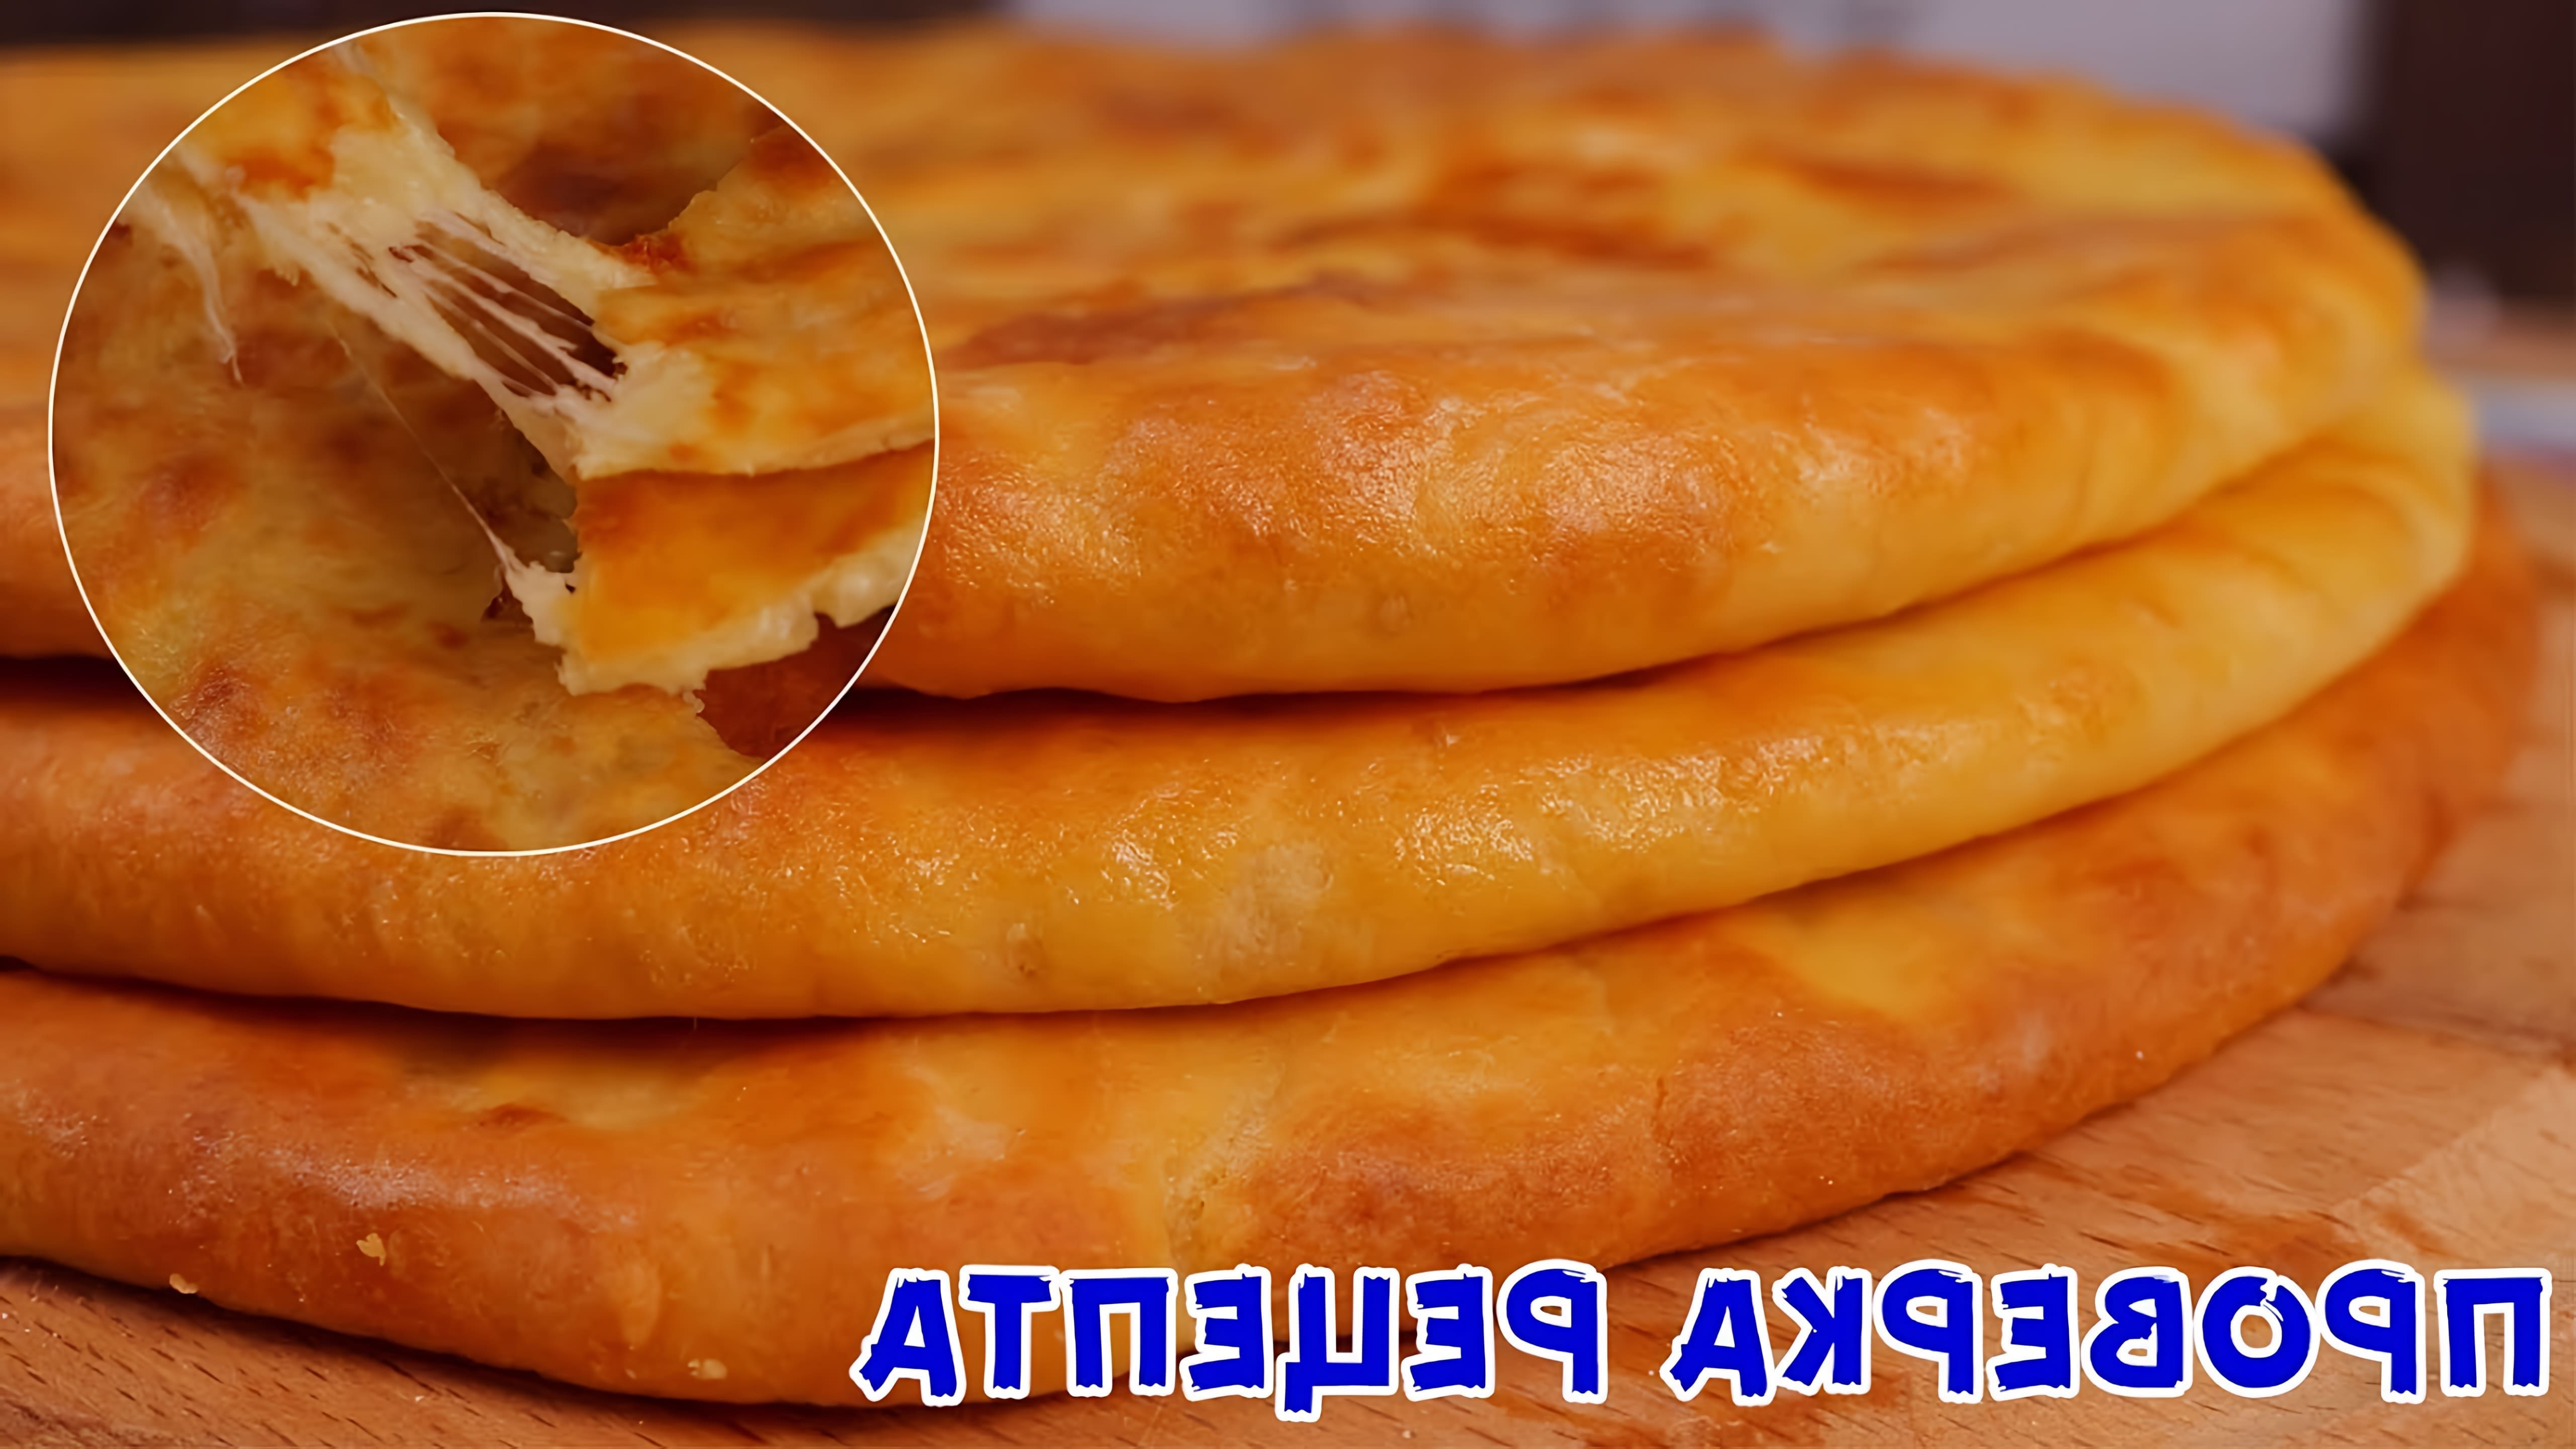 В этом видео демонстрируется процесс приготовления осетинских пирогов